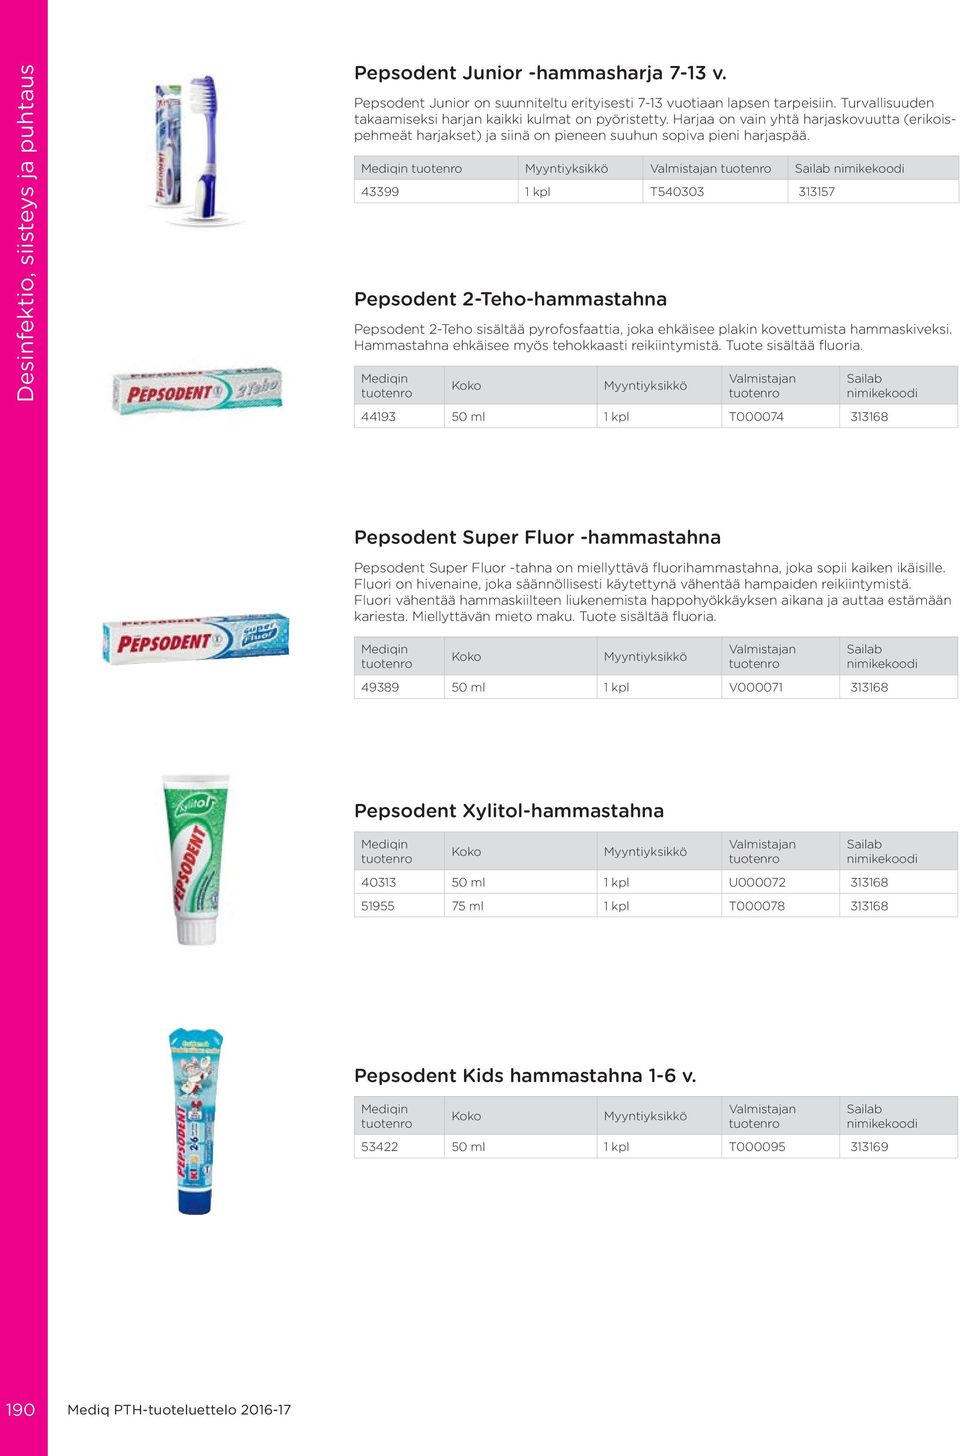 43399 1 kpl T540303 313157 Pepsodent 2-Teho-hammastahna Pepsodent 2-Teho sisältää pyrofosfaattia, joka ehkäisee plakin kovettumista hammaskiveksi. Hammastahna ehkäisee myös tehokkaasti reikiintymistä.